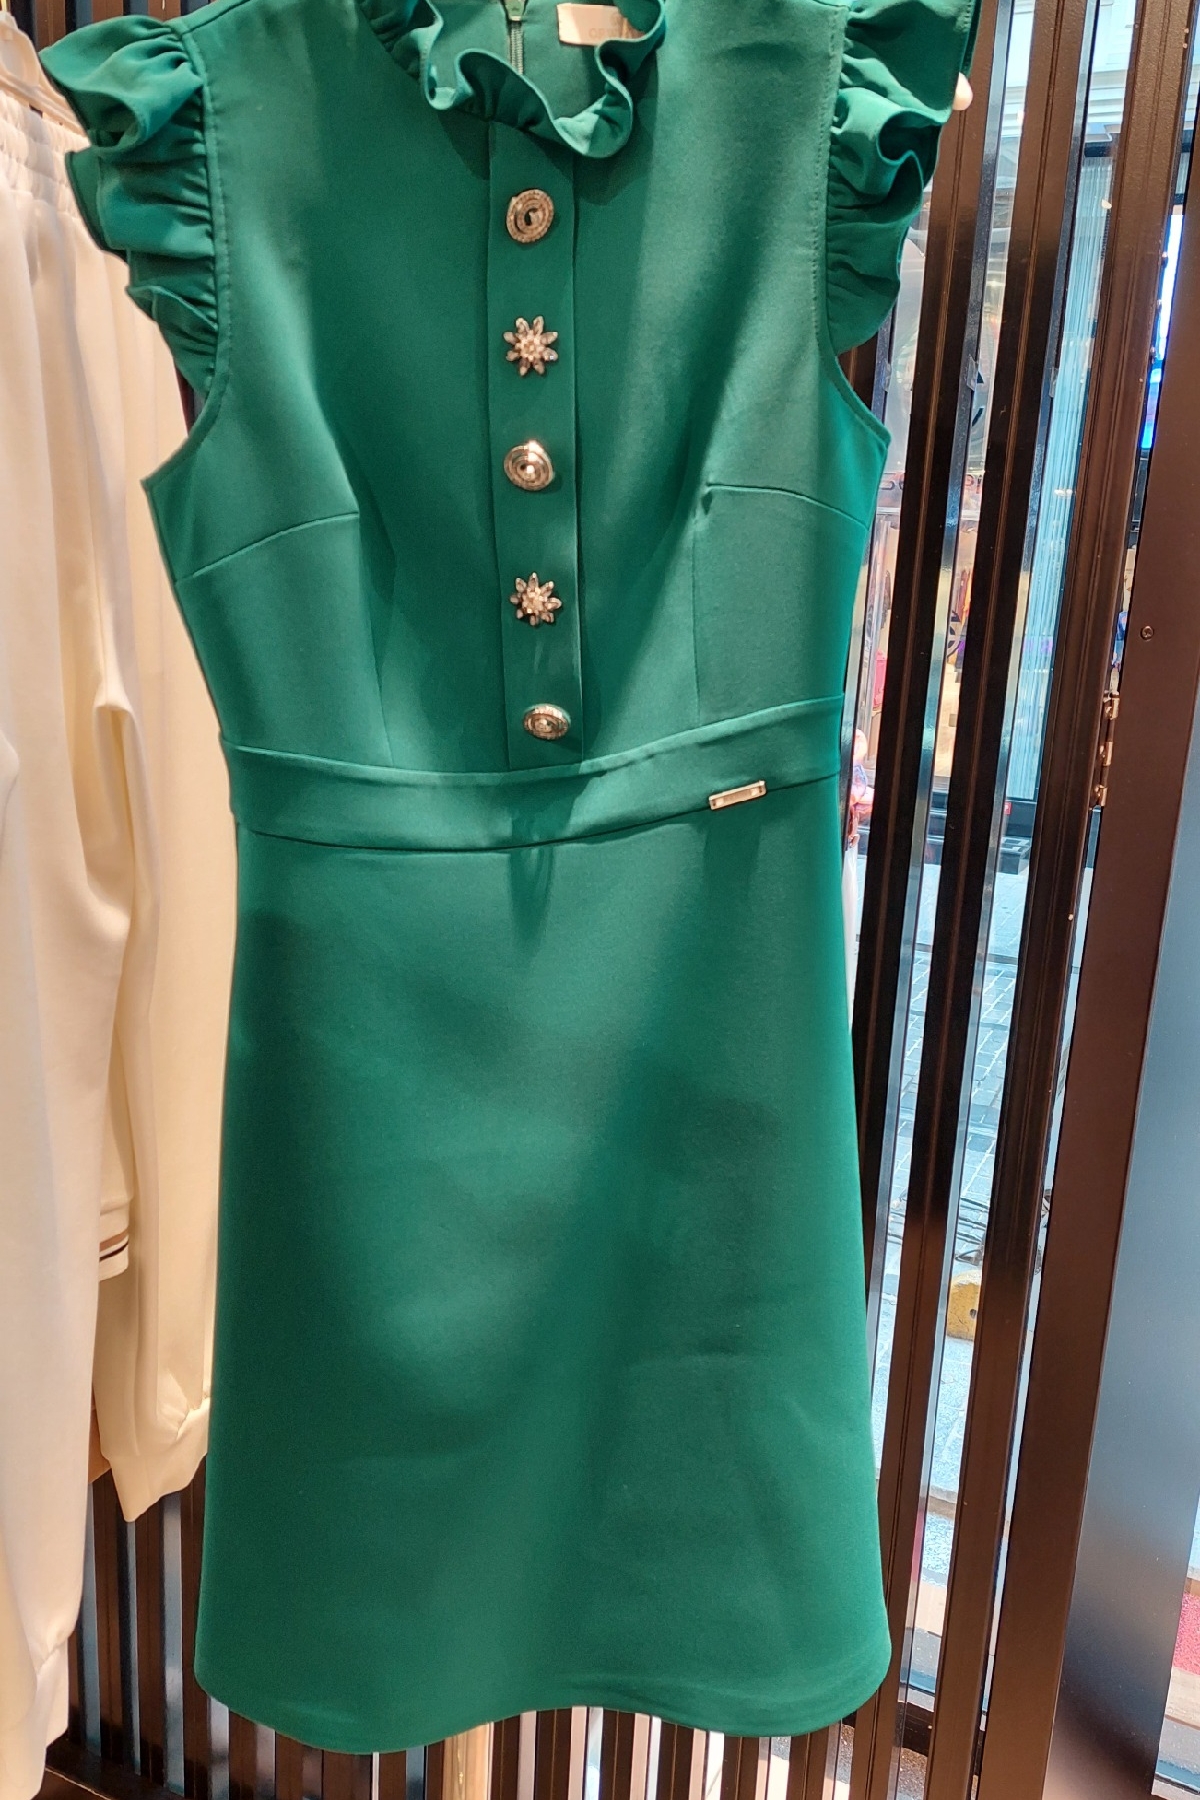 Dresses-Green